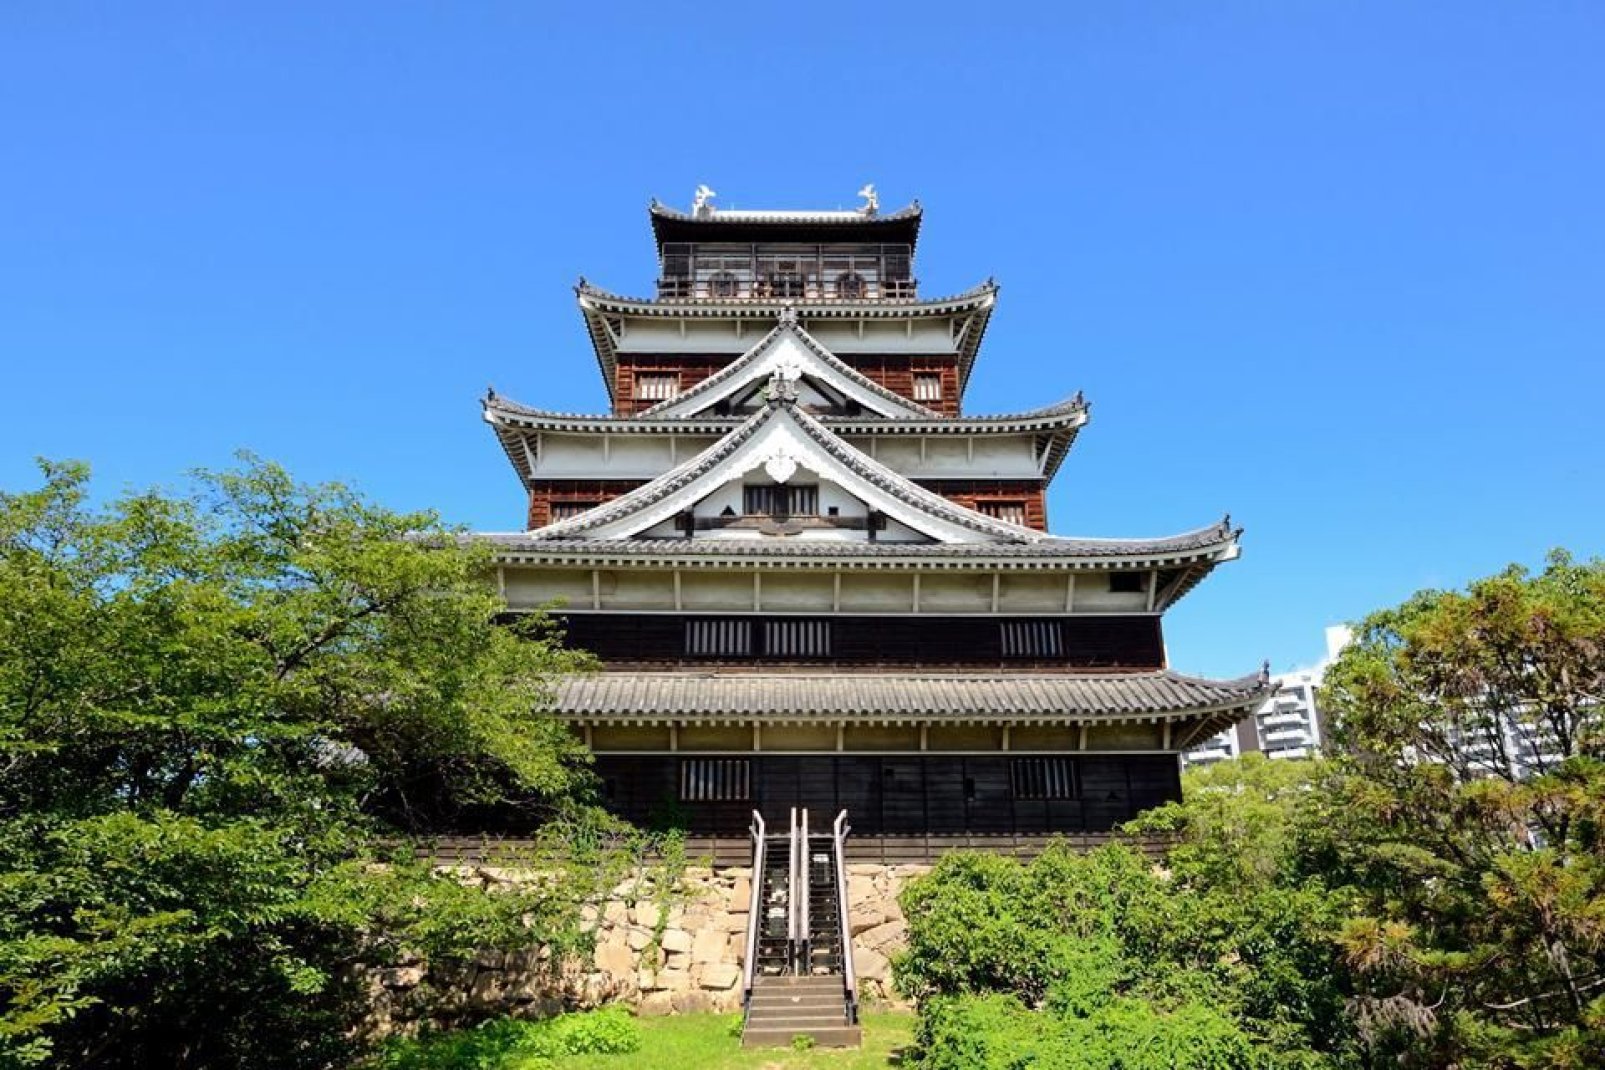 Détruit lors du bombardement de 1945, le château d'Hiroshima fut reconstruit en bois et en béton et abrite un exposition permanente sur les samouraïs.